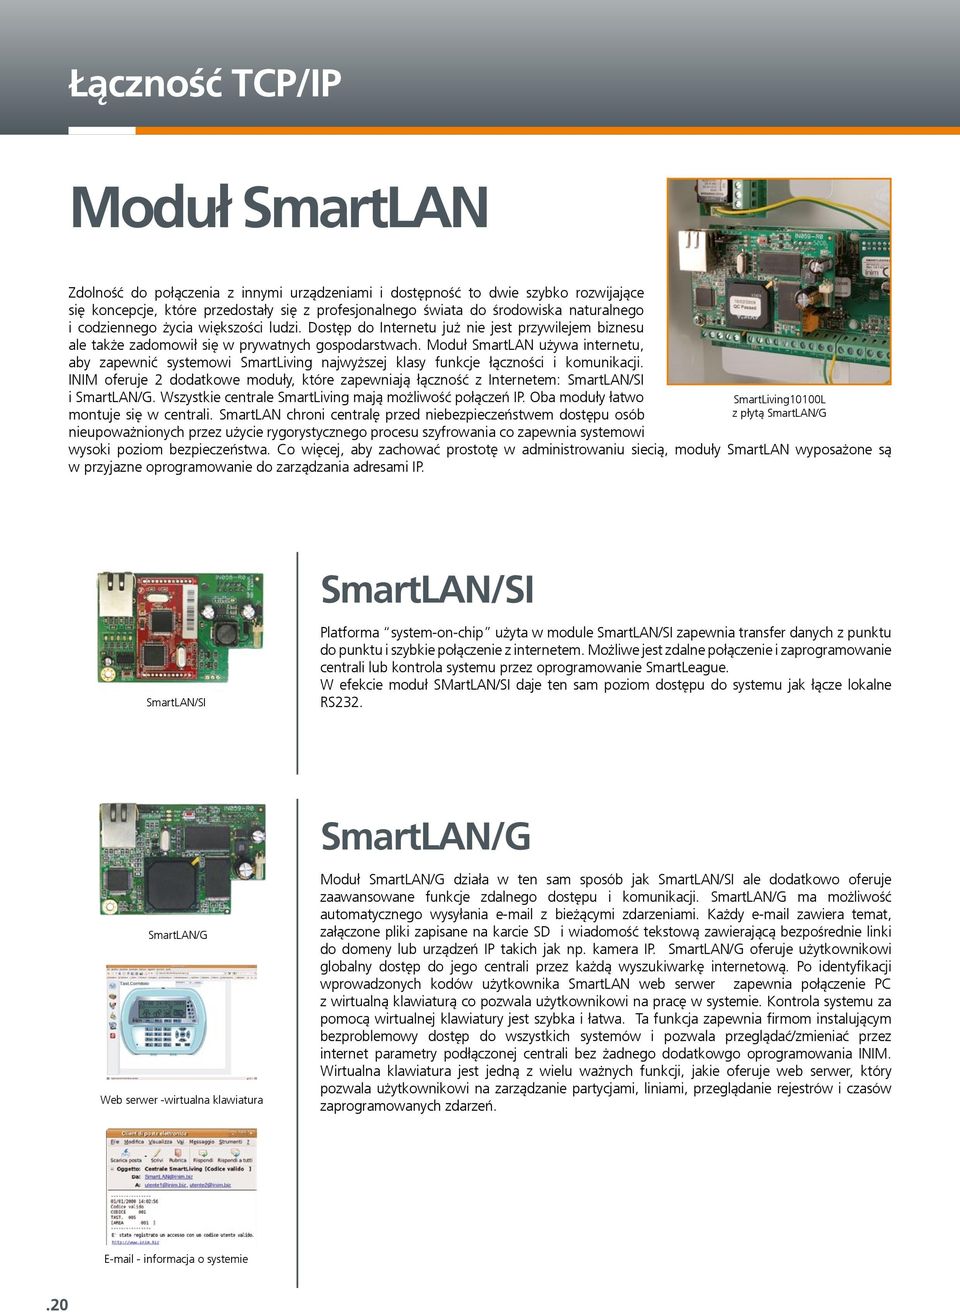 Moduł SmartLAN używa internetu, aby zapewnić systemowi SmartLiving najwyższej klasy funkcje łączności i komunikacji.